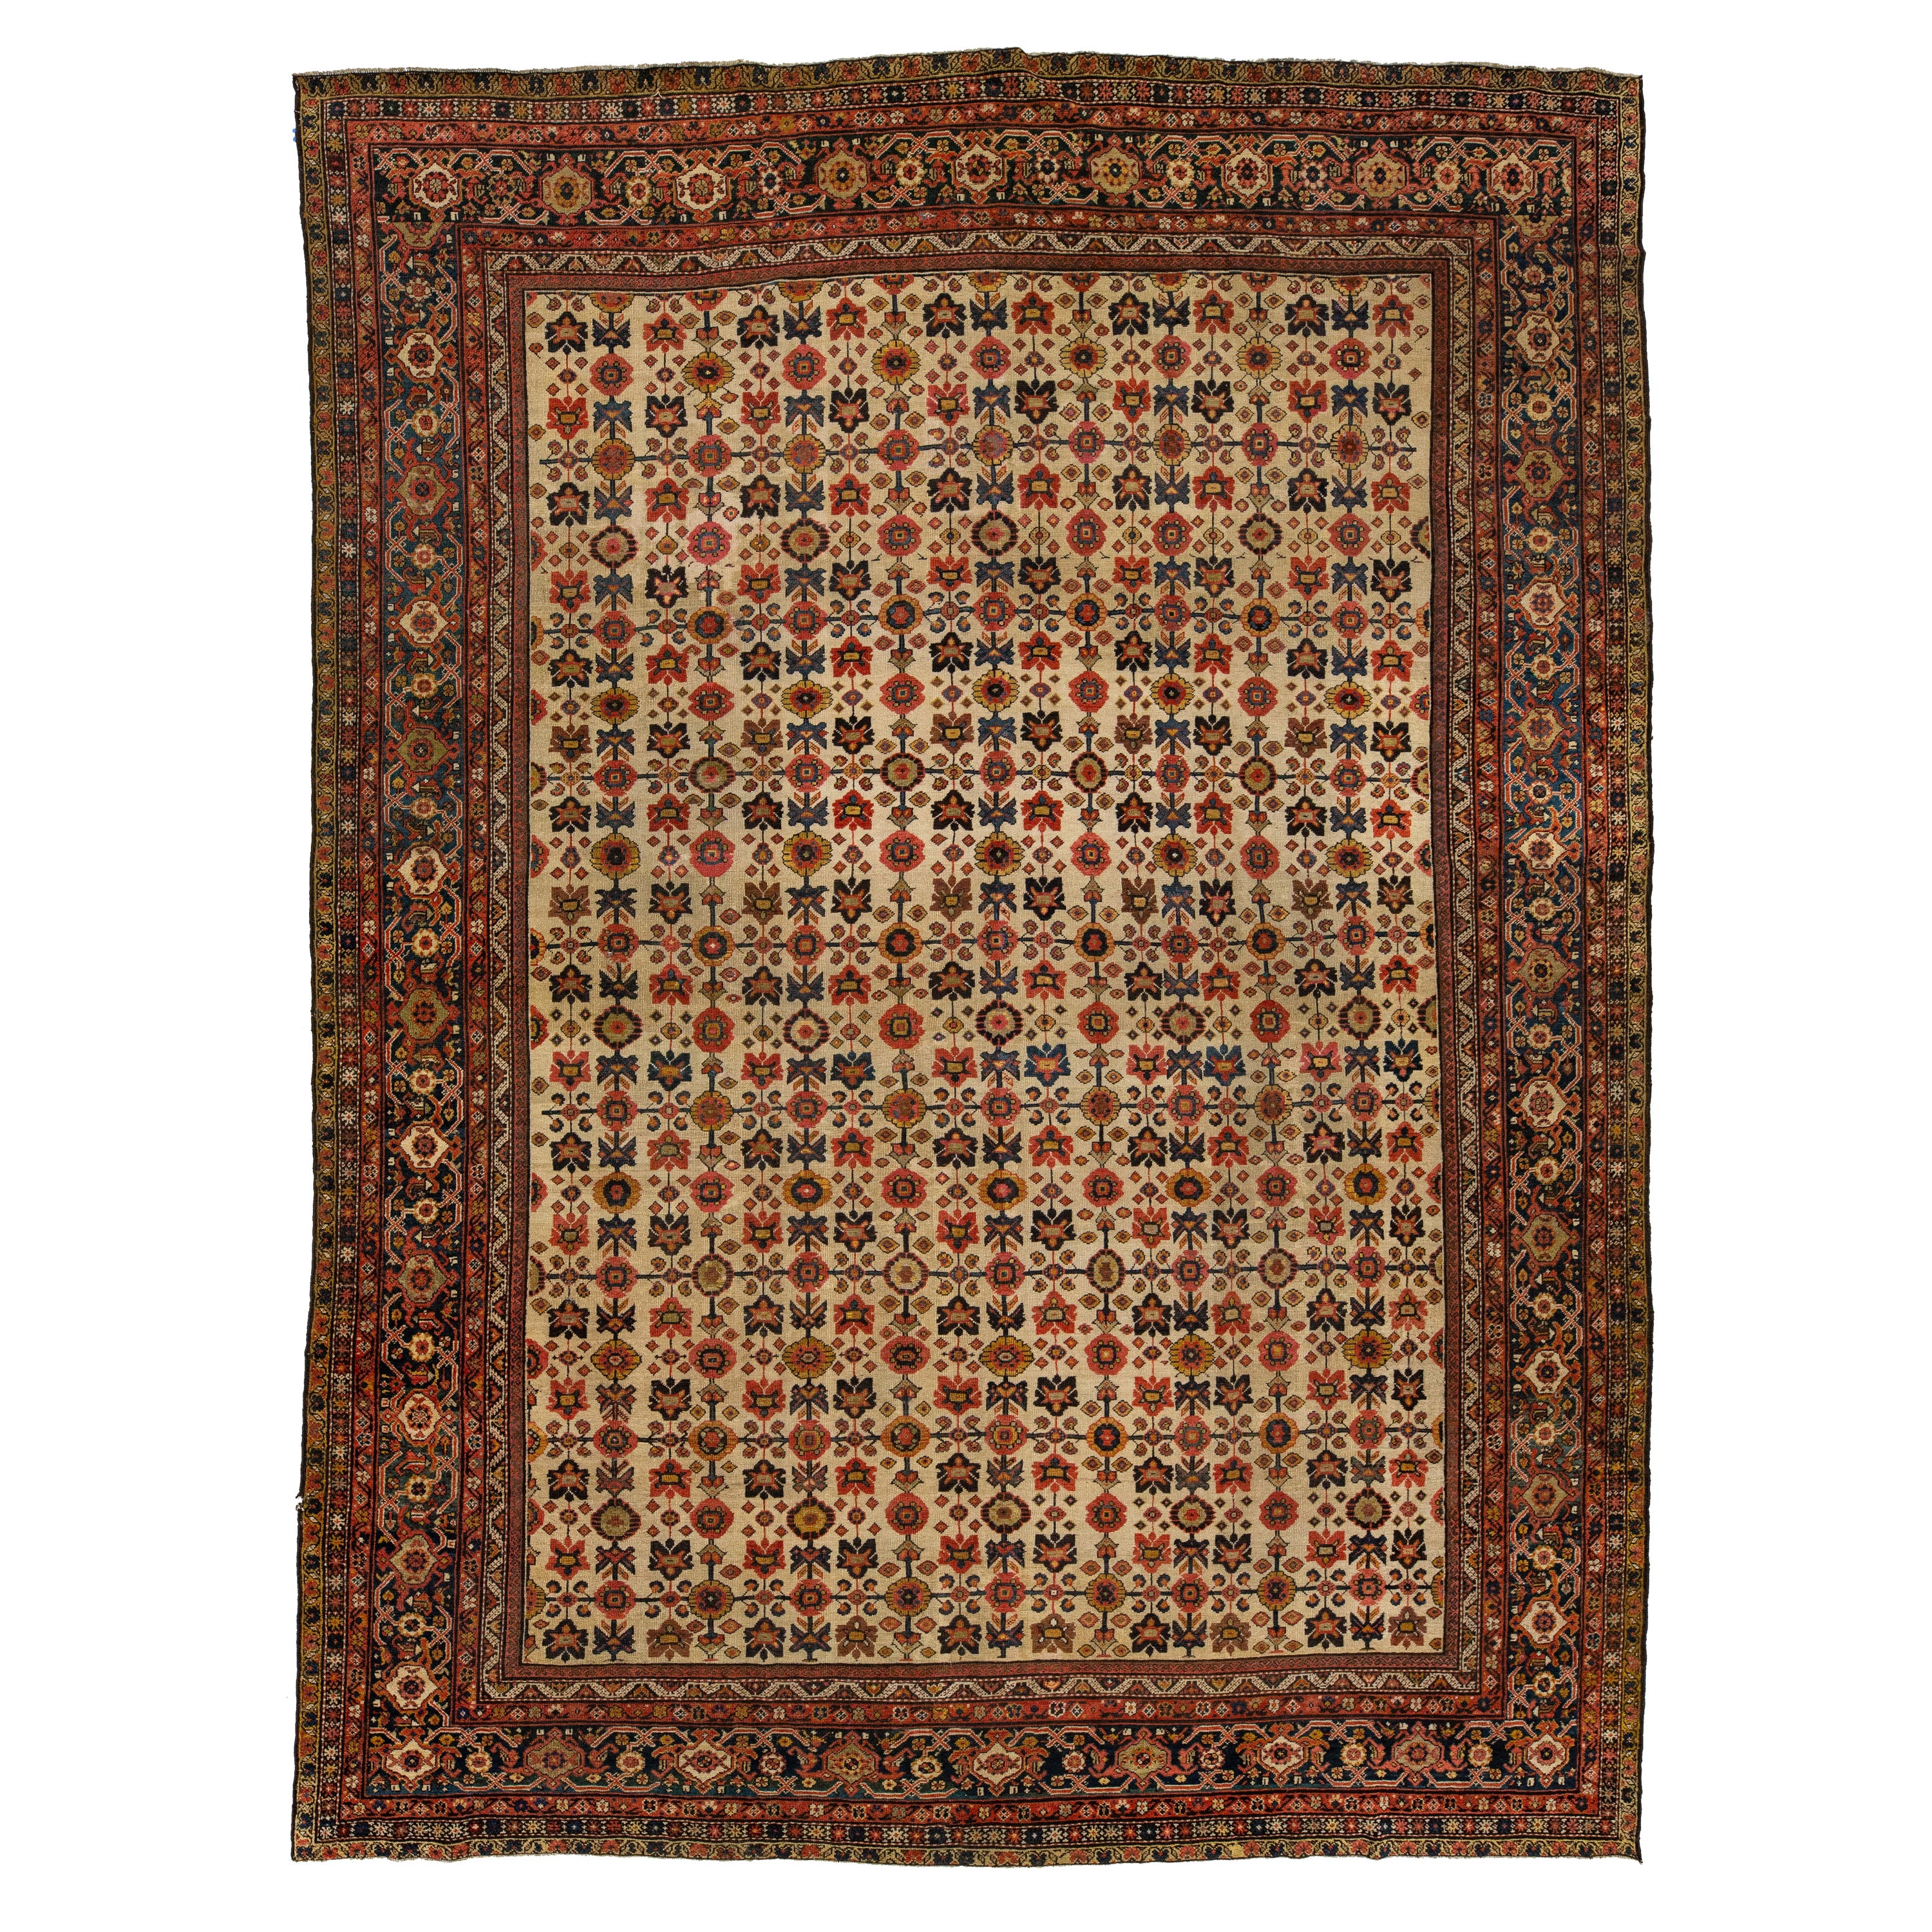 1880er Jahre antike persische Farahan Tan Wolle Teppich handgefertigt mit Allover-blumigen Mustern